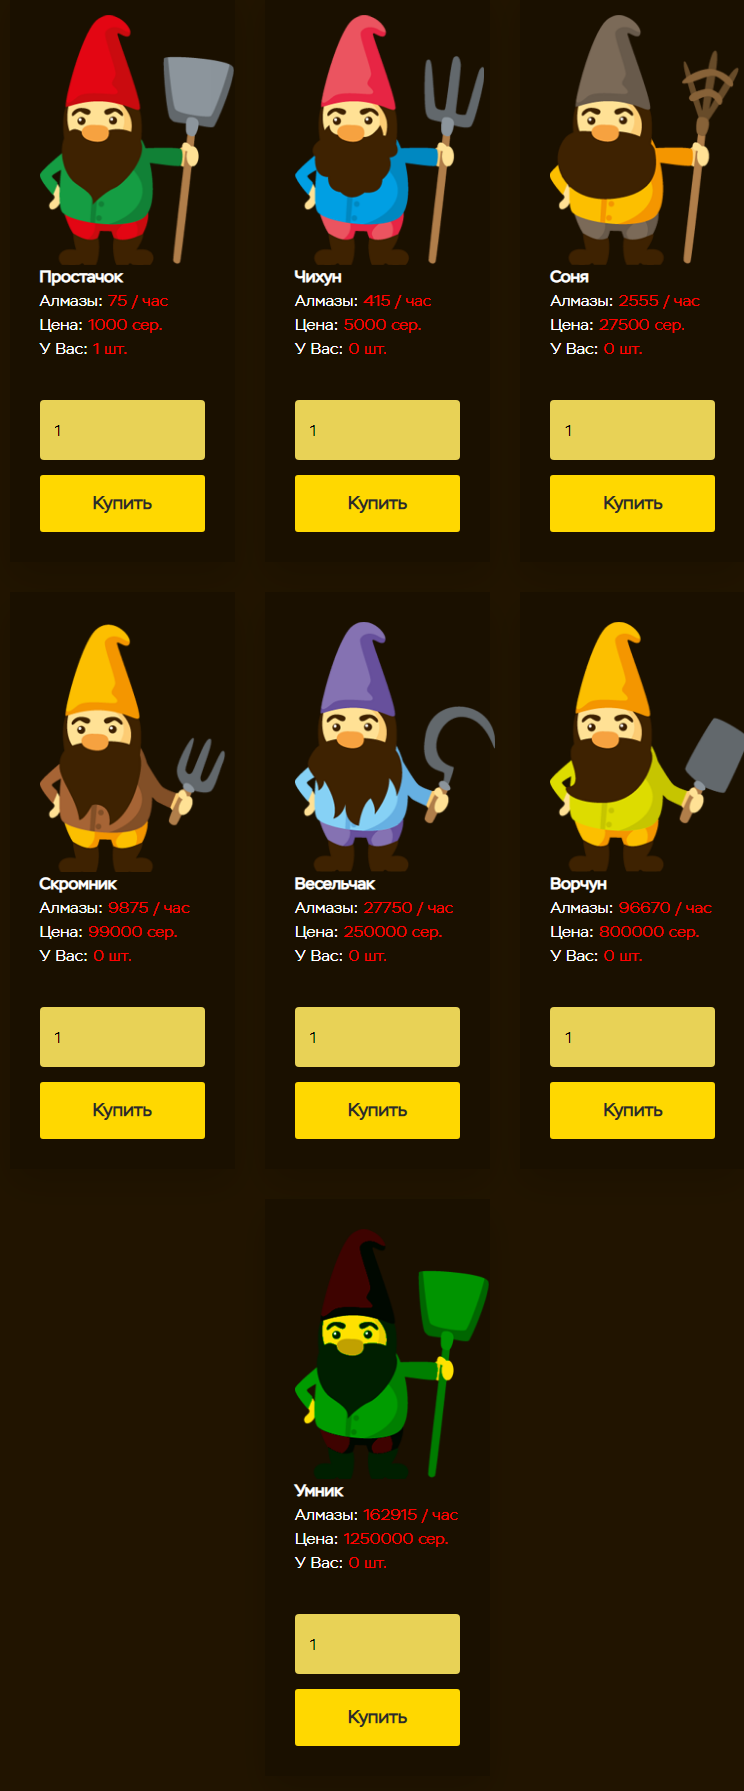 7-Gnomes - 7-gnomes.org - маркетинг игры